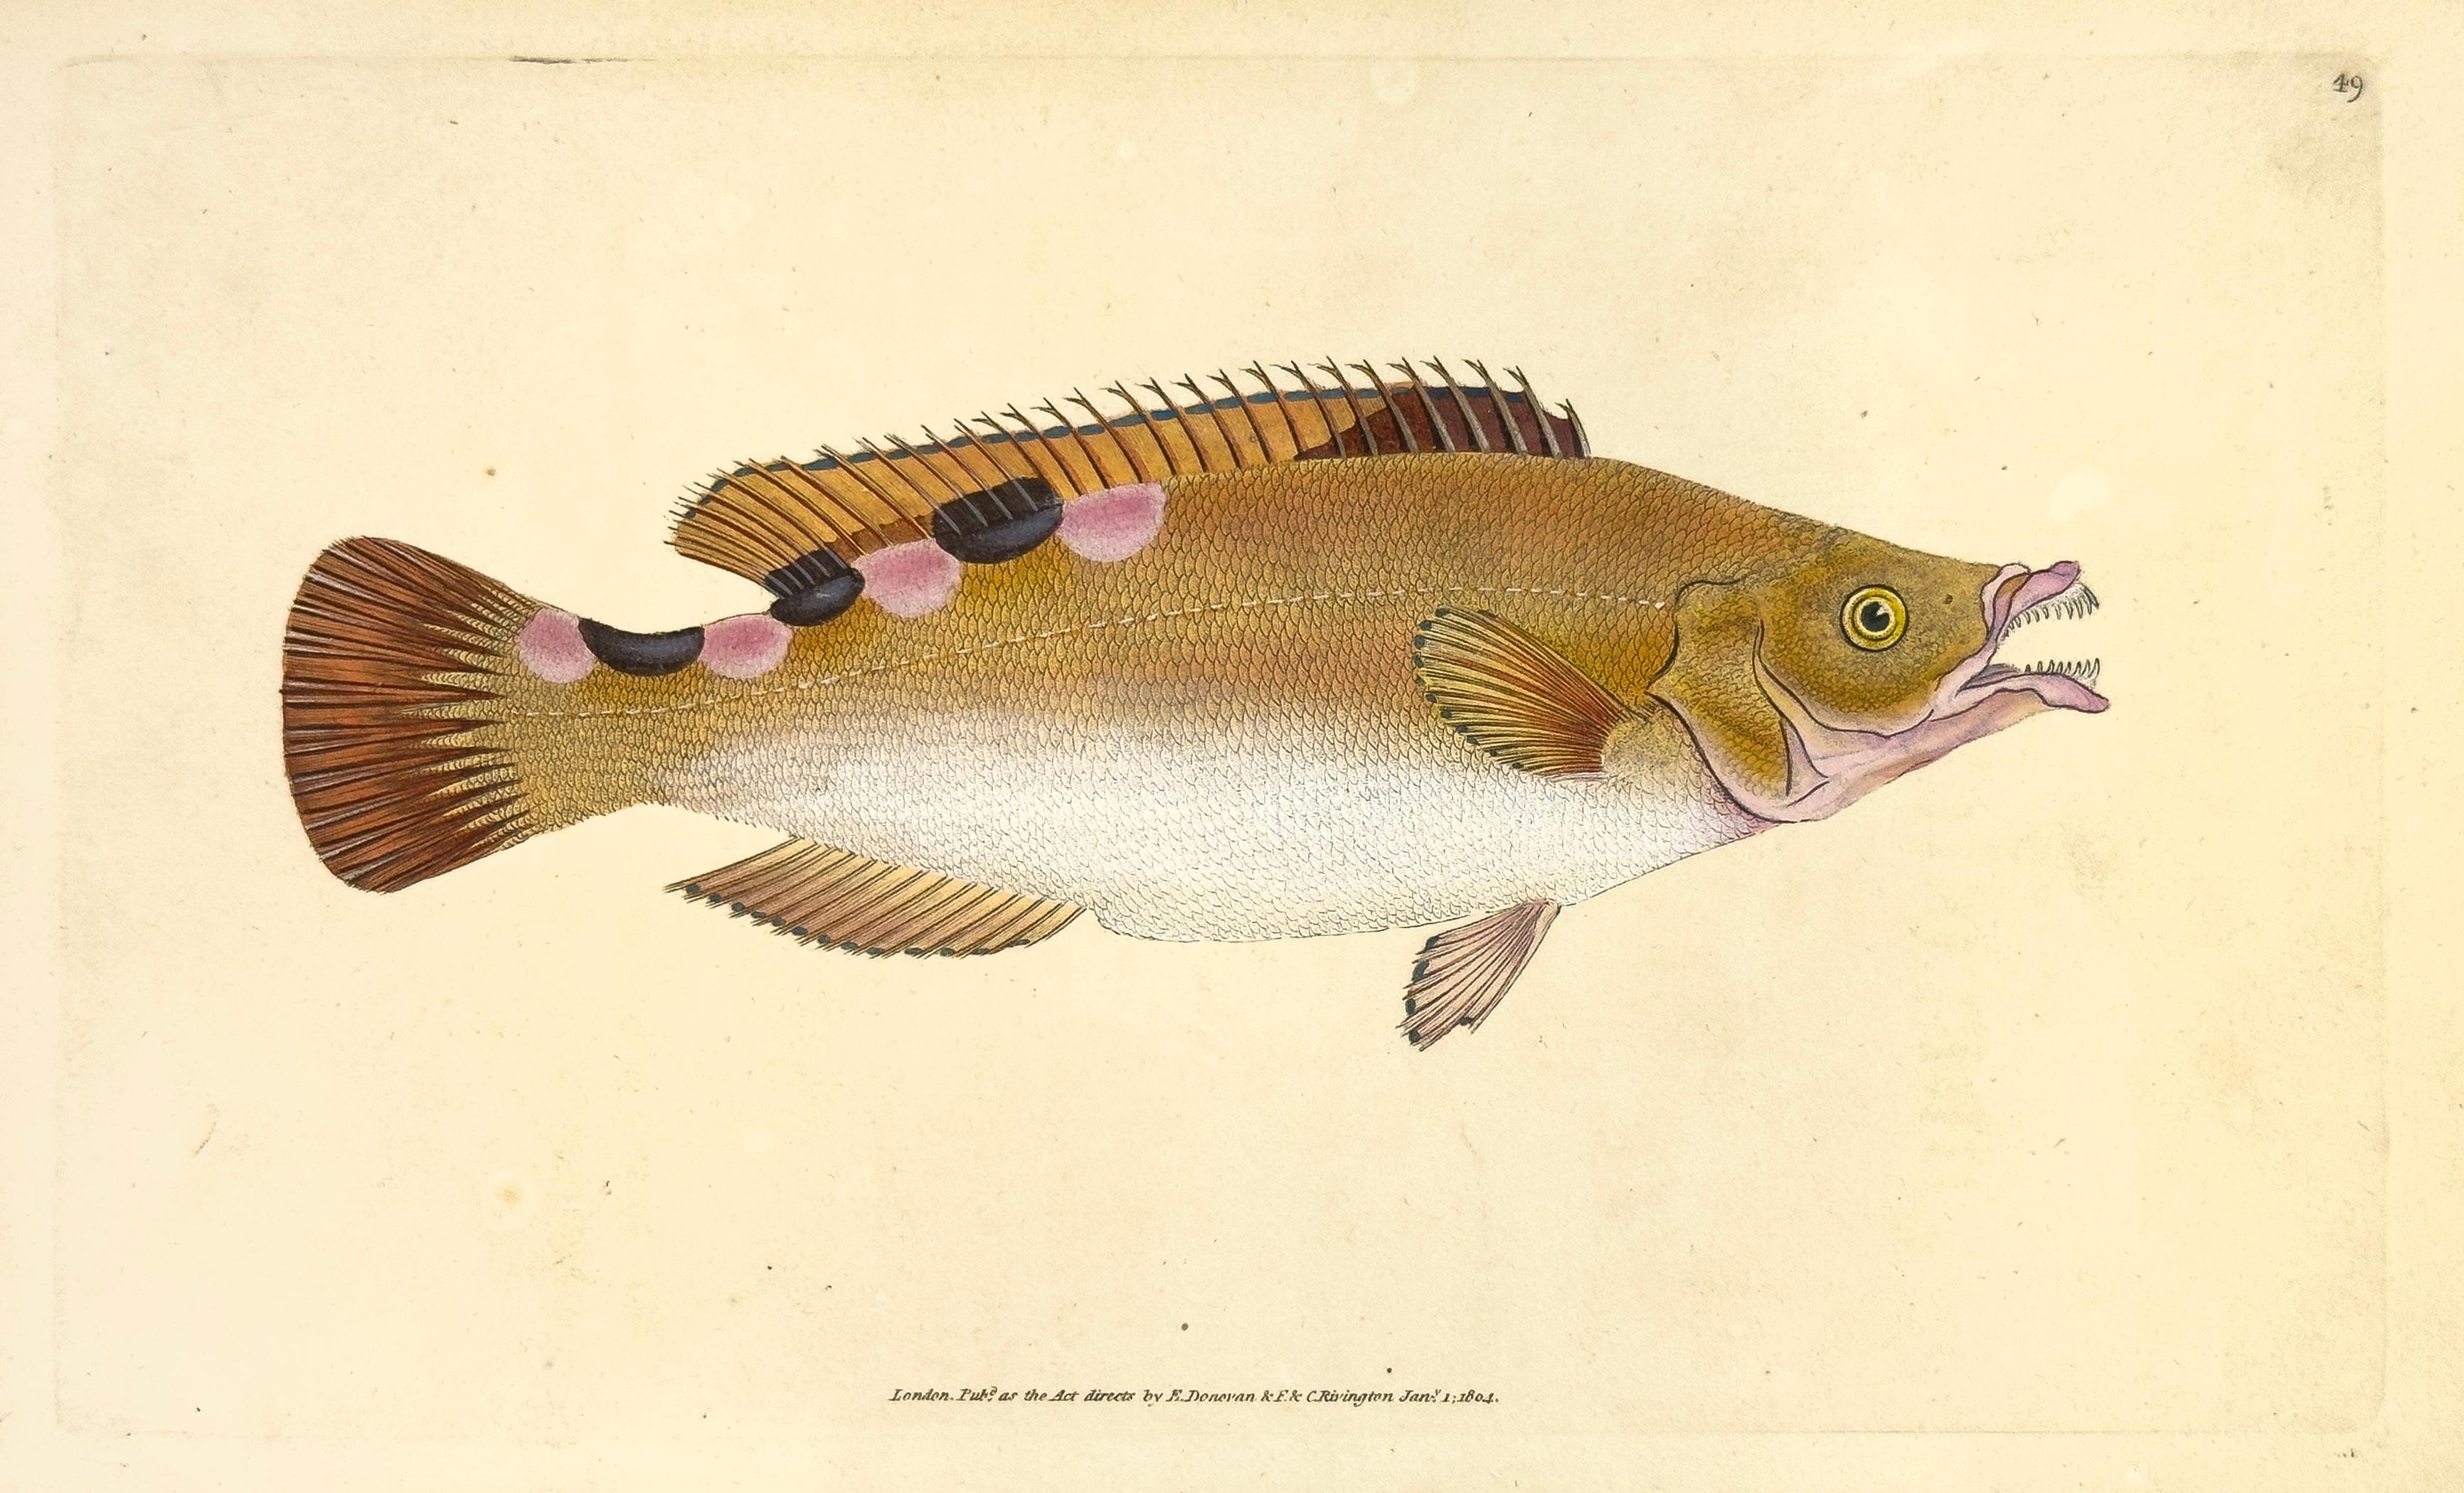 Print Edward Donovan - 49 : Labrus trimaculatus, Tramculé